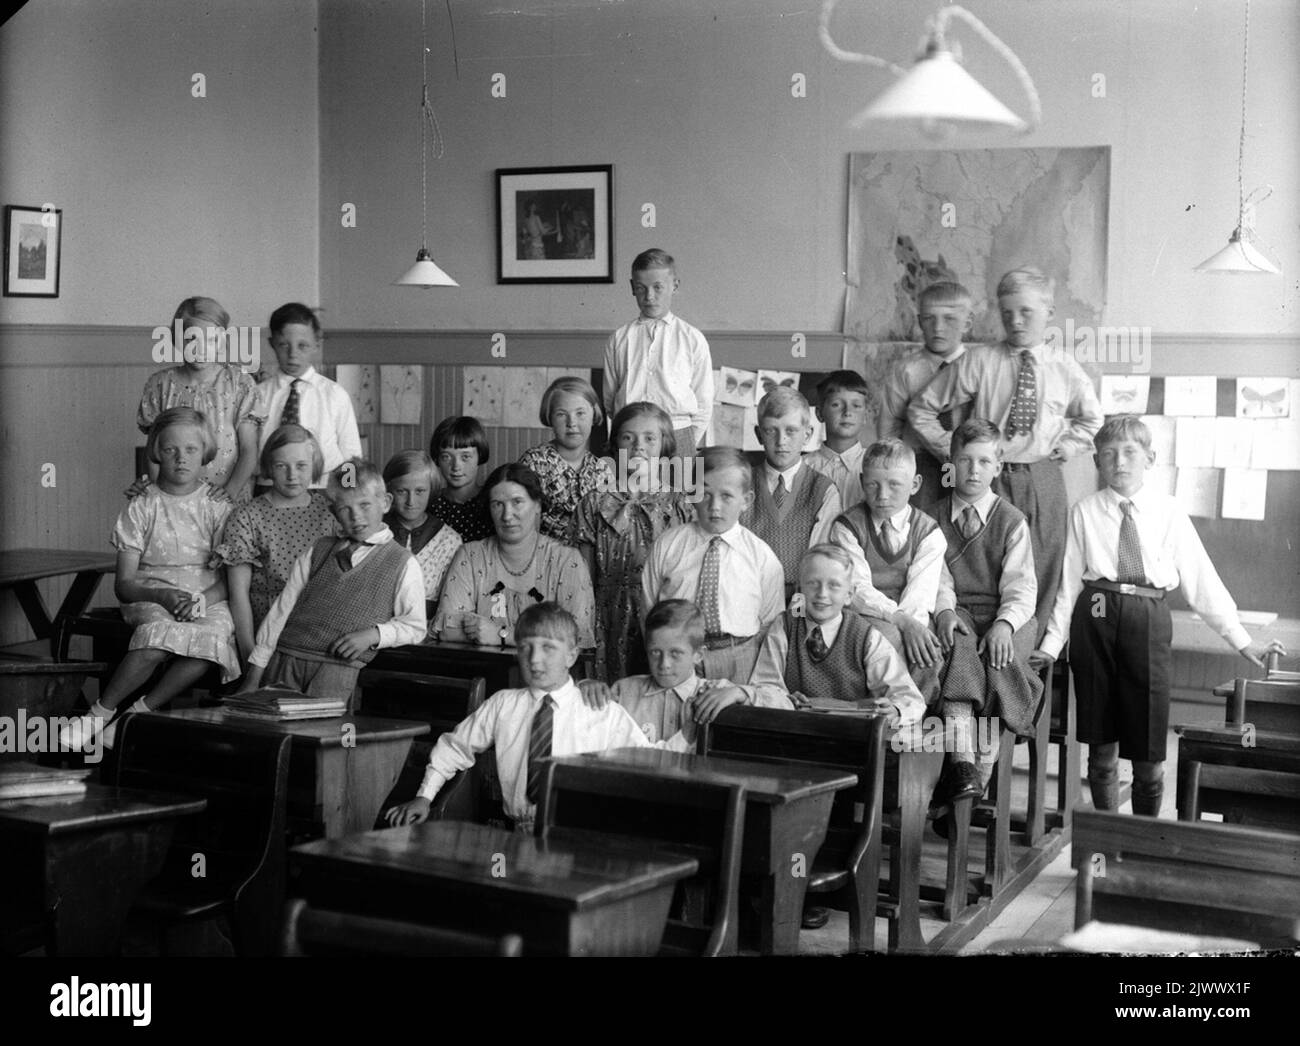 Old school in Bergby around 1936-37. At the far end of the left: Bertil Viklund (Häckeläng), Lennart Silén (Sjökalla) and Stig Eklund (Bergby). Second row from left: Thea Elg (Bergbybacken), Anna Sandin (Häckeläng), Ivan Jonsson (Åbyn), Ingrid Sjöberg (Häckelsäng), Ebba Högvall (Wij), teacher Mia Westerberg, Anna Sundkvist (Häckelsäng), Britta Jonsson, Olle Lindberg (Wij), Martin Häggblom (Häckeläng), Arne Persson (Sjökalla), Arne Öberg (Berg) and Pettersson (Bergby). At the back left: Anna-Lisa Vinkvist (Fors), Birger Viklund (Häckeläng), Rune Andersson, Olle Lindström (Häckelsäng), Yngve And Stock Photo